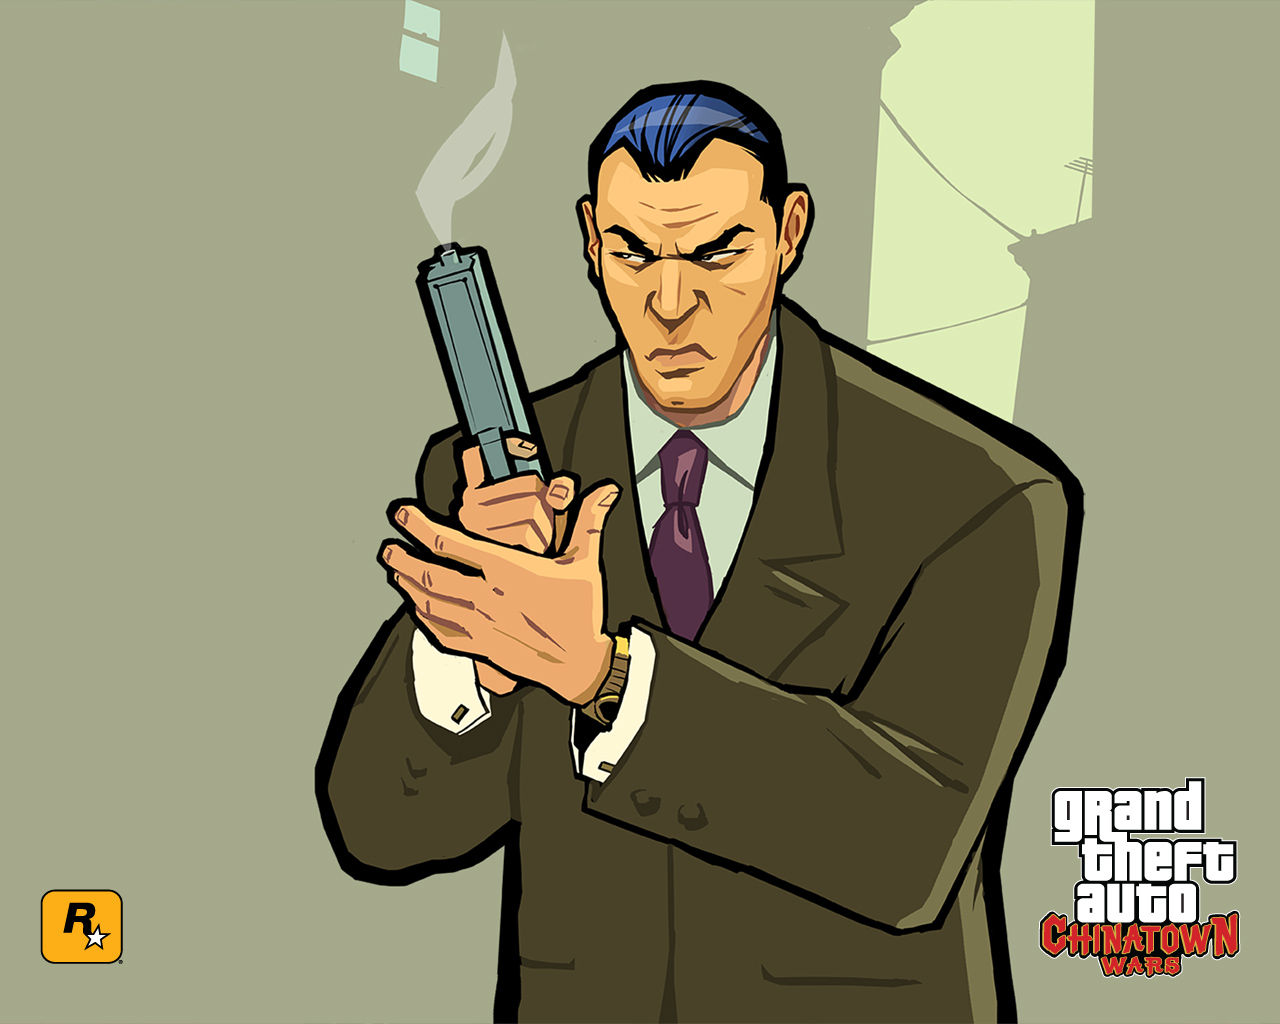 Meilleurs fonds d'écran Grand Theft Auto: Chinatown Wars pour l'écran du téléphone